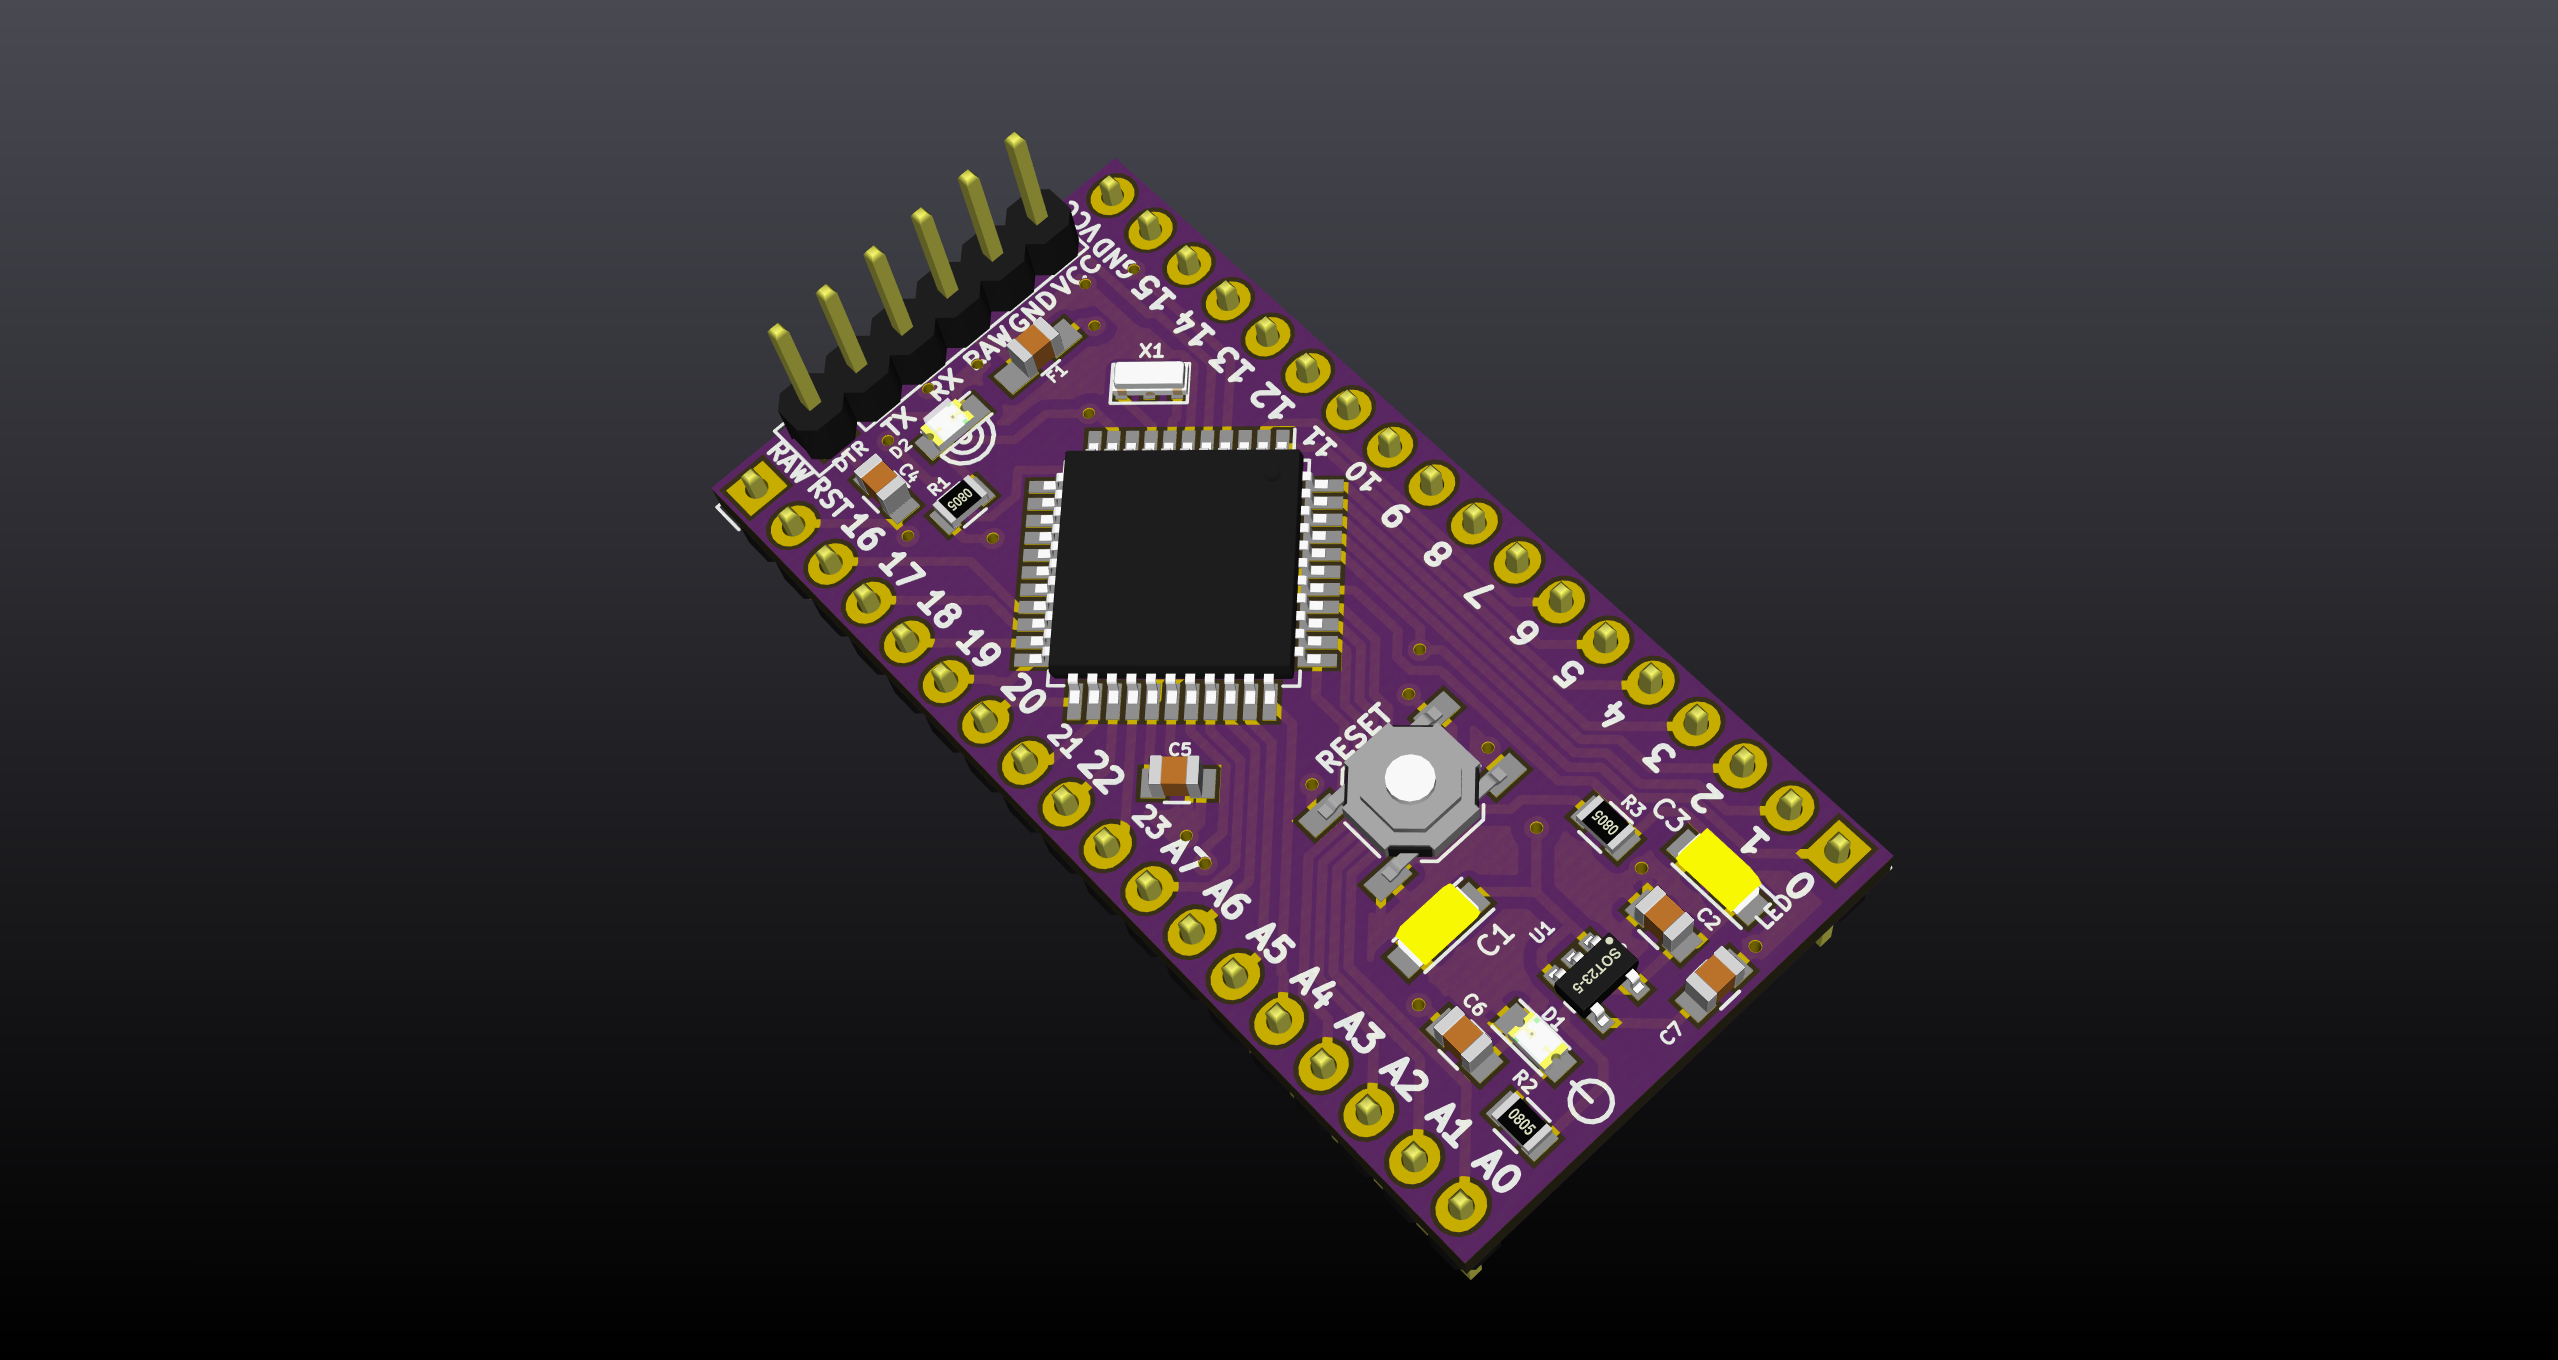 Arduino board based on ATmega644p